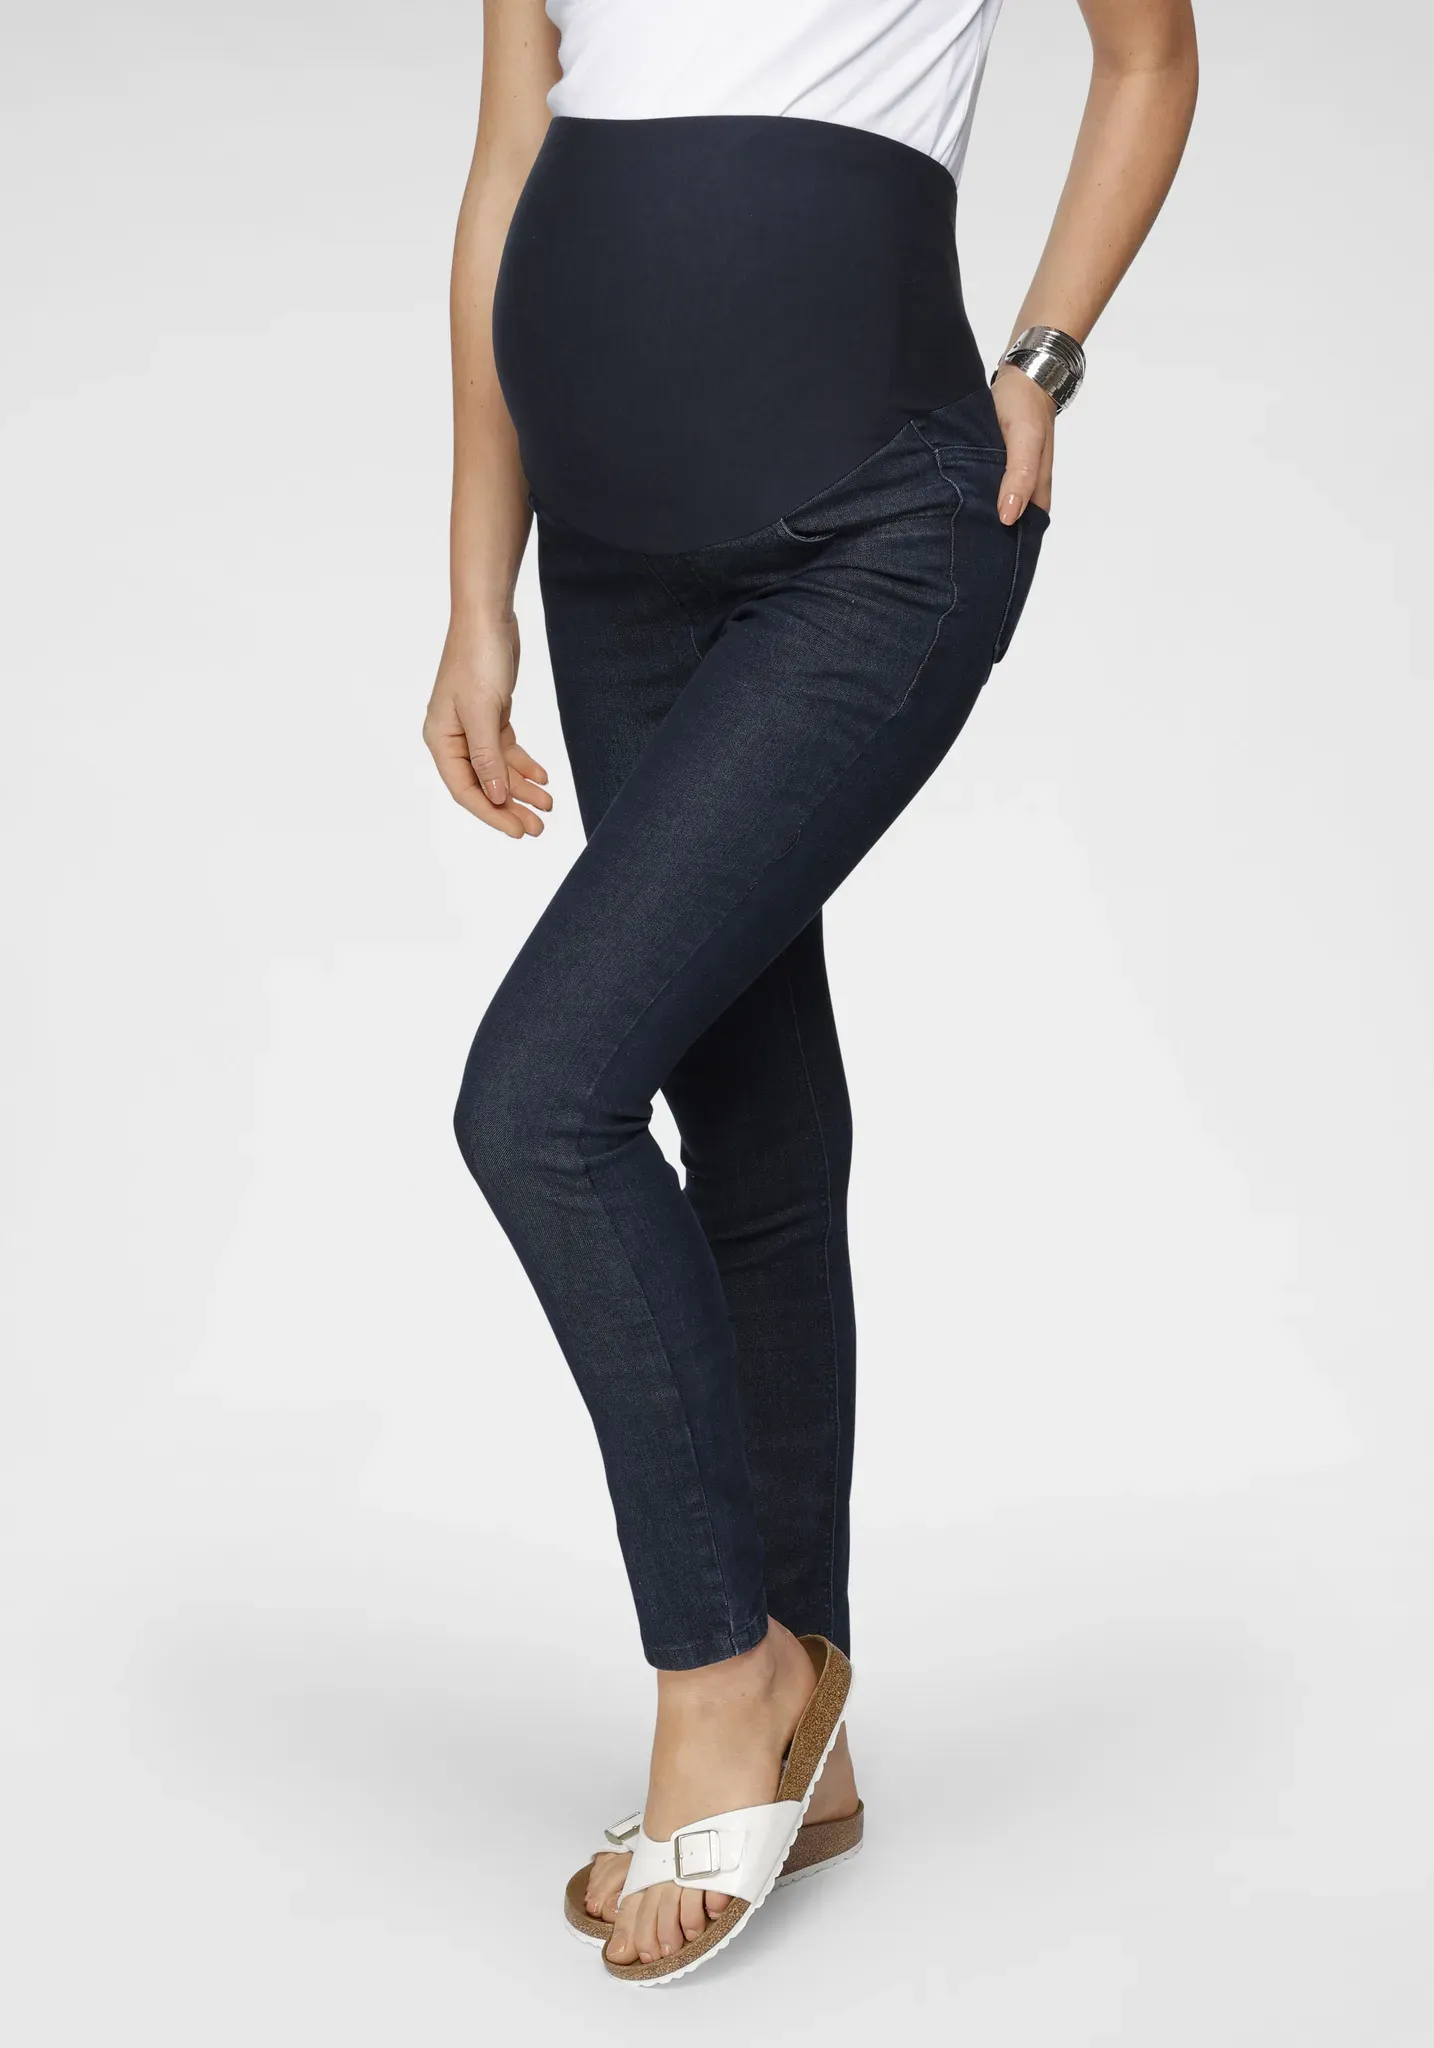 Umstandsjeans NEUN MONATE "Jeans für Schwangerschaft und Stillzeit" Gr. 34, N-Gr, blau (rinsed) Damen Jeans Umstandsmode in modischer Waschung